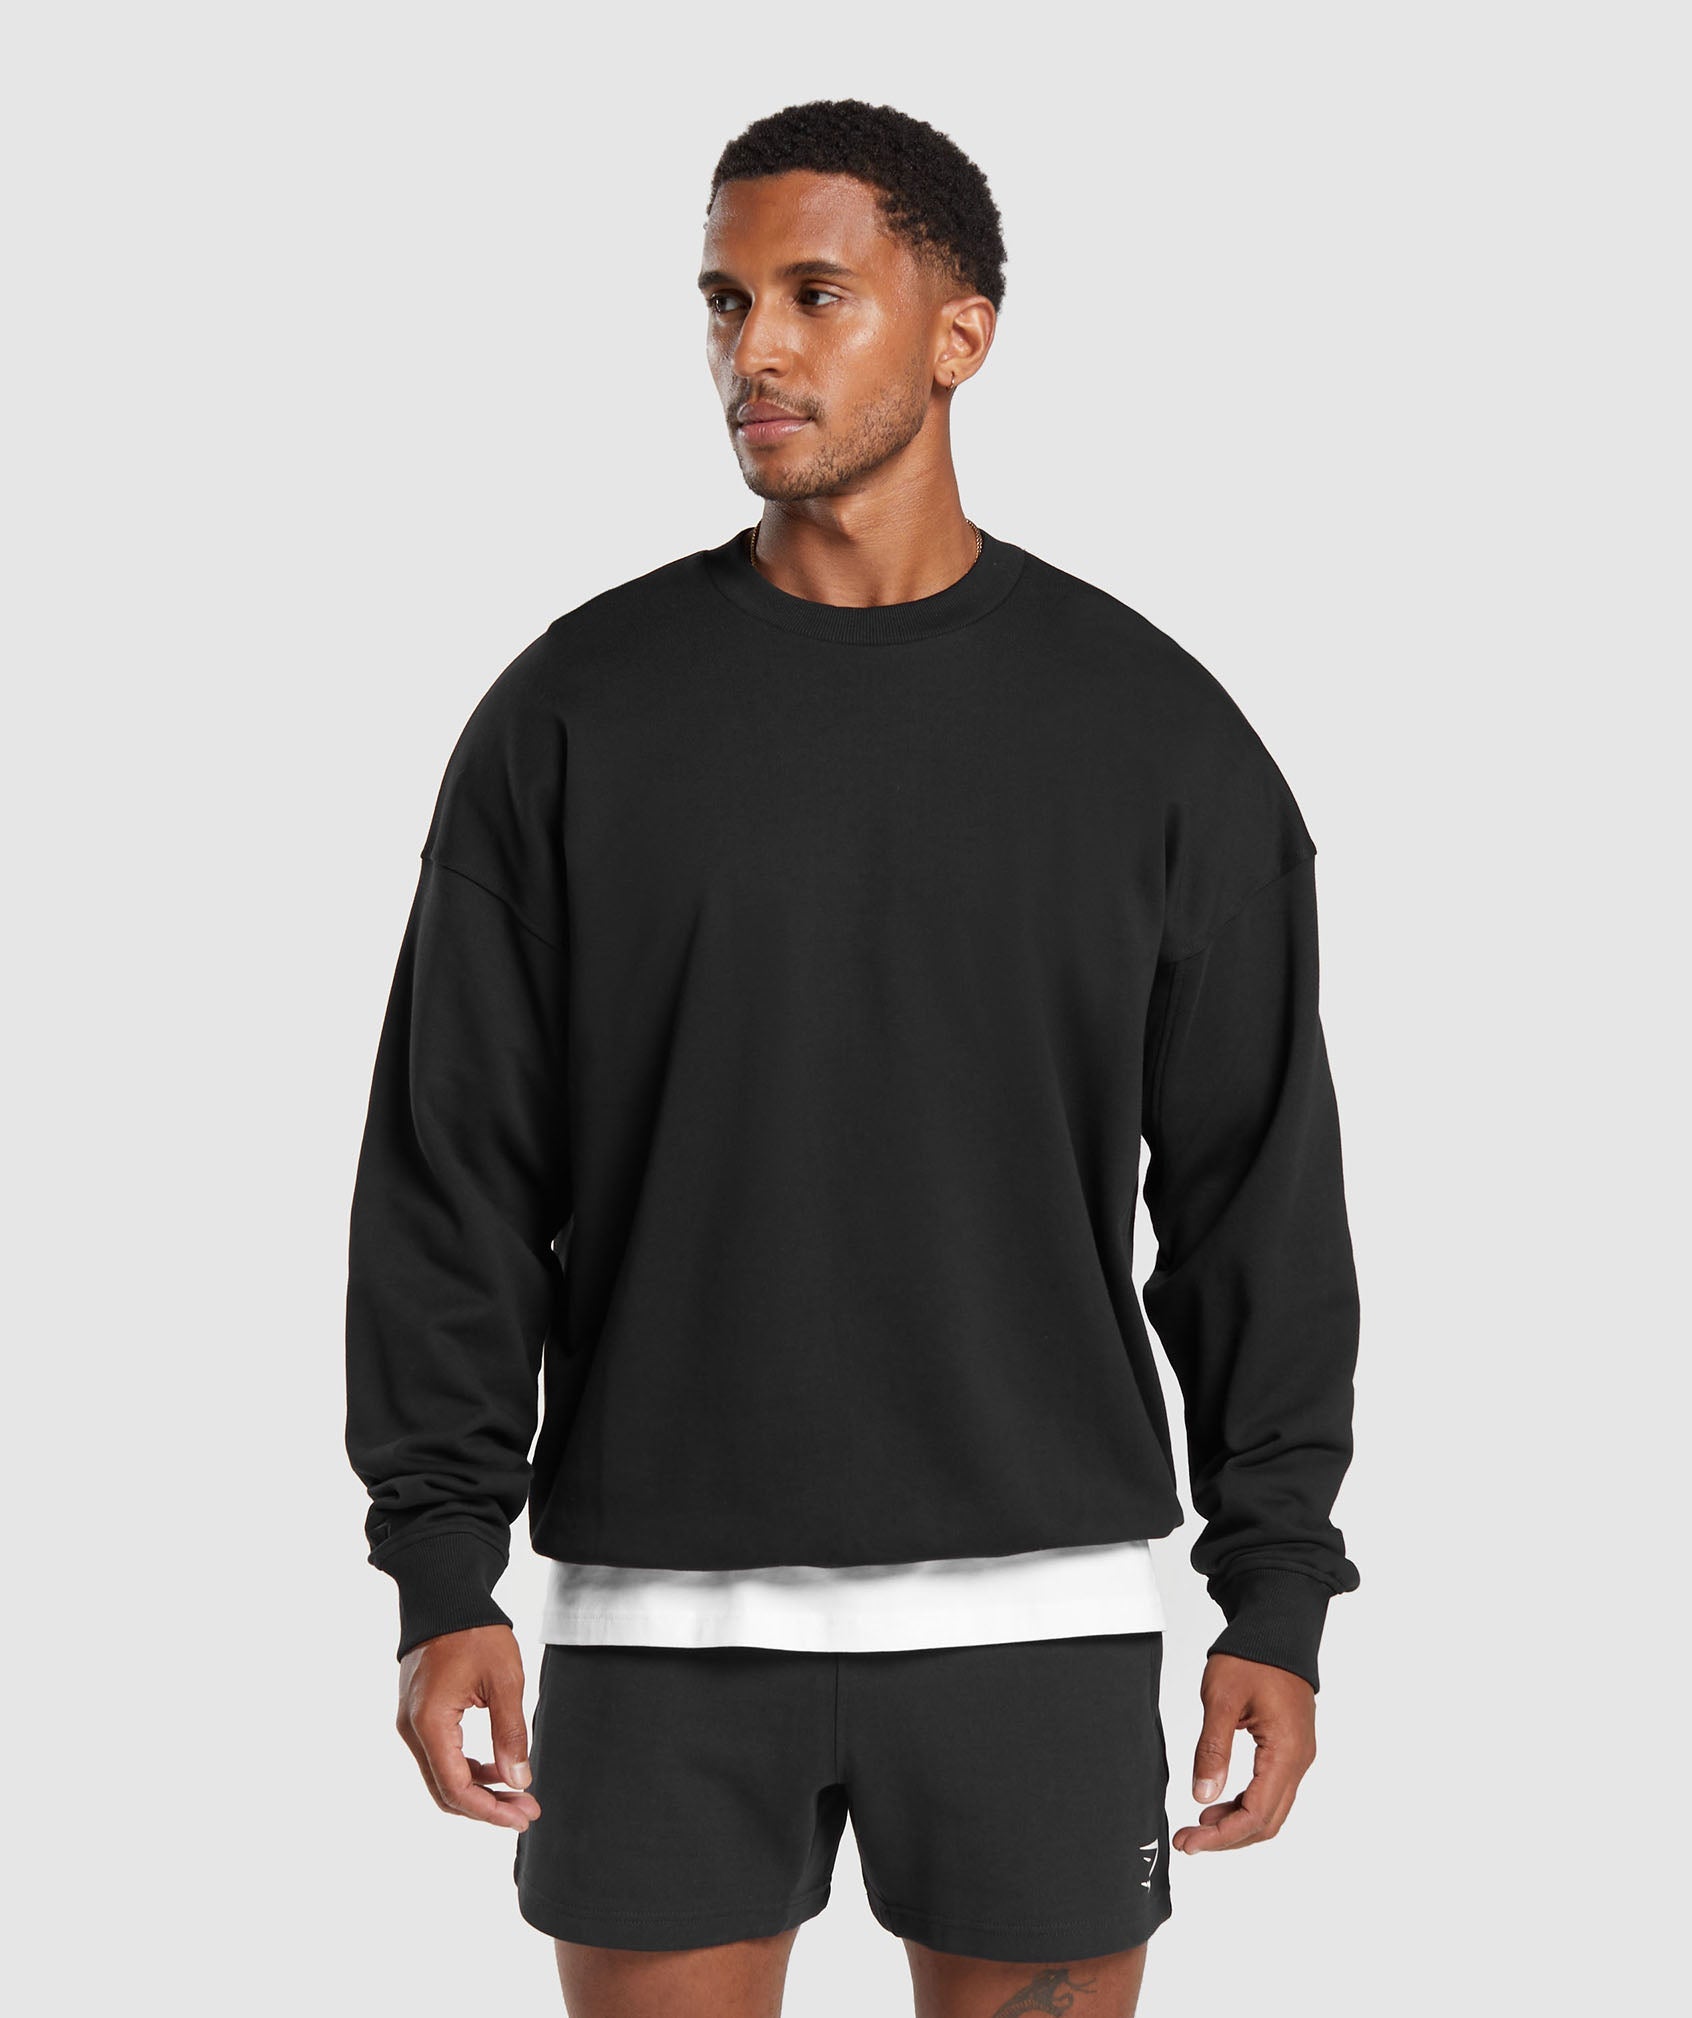 Gymshark Mens Light Grey Athletic Compression Short Sleeve Shirt Size -  beyond exchange